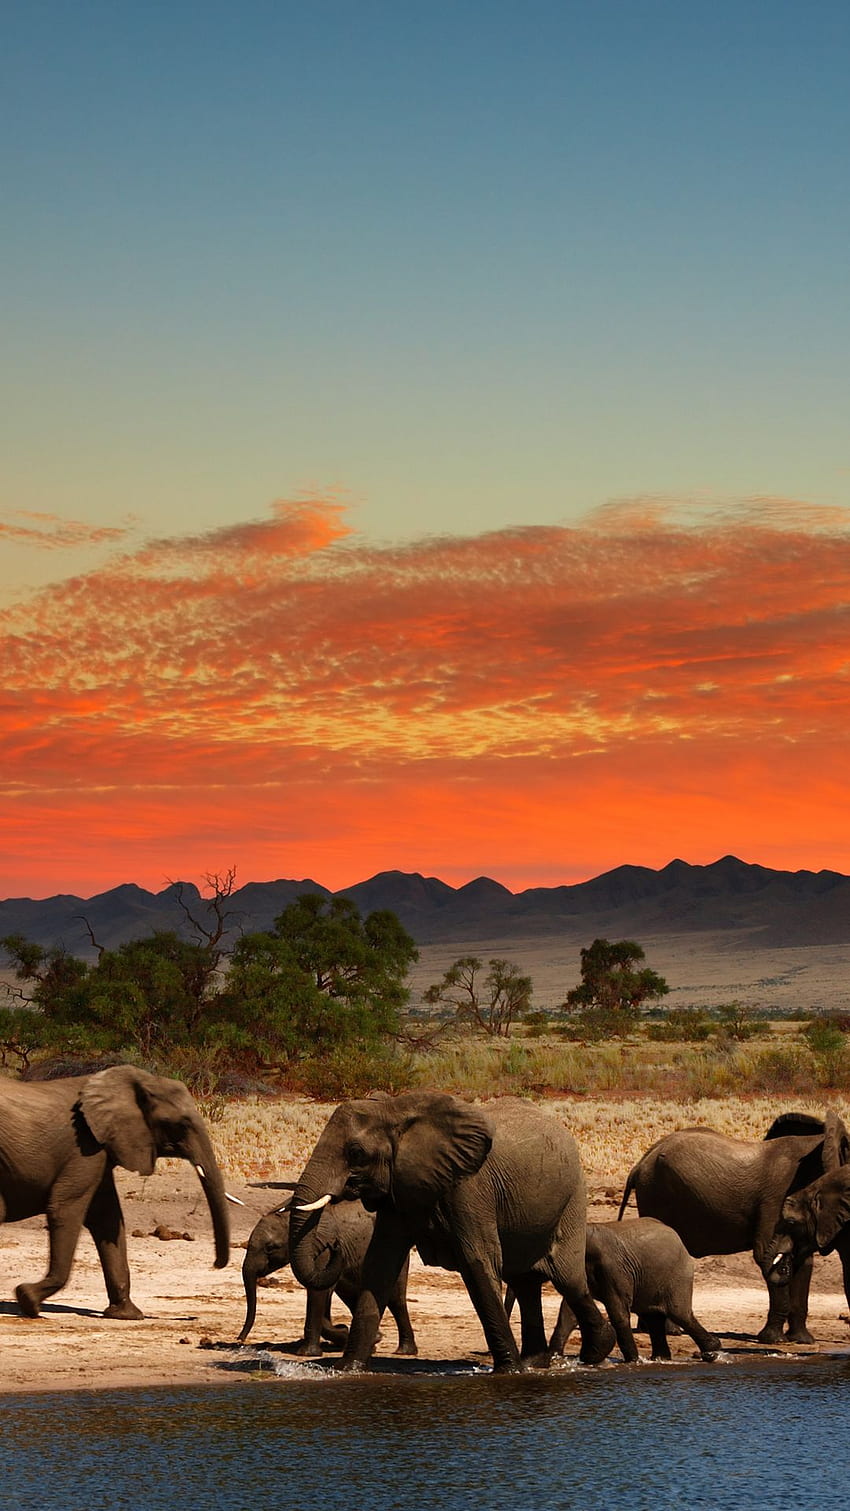 Cảnh đồng cỏ châu Phi là nơi định cư của những con thú hoang dã như sư tử, voi, hươu cao cổ và nhiều loại động vật khác. Với bầu trời mênh mông và các cây cối xung quanh, đồng cỏ châu Phi sẽ mang lại cảm giác thật sự riêng biệt cho bạn.